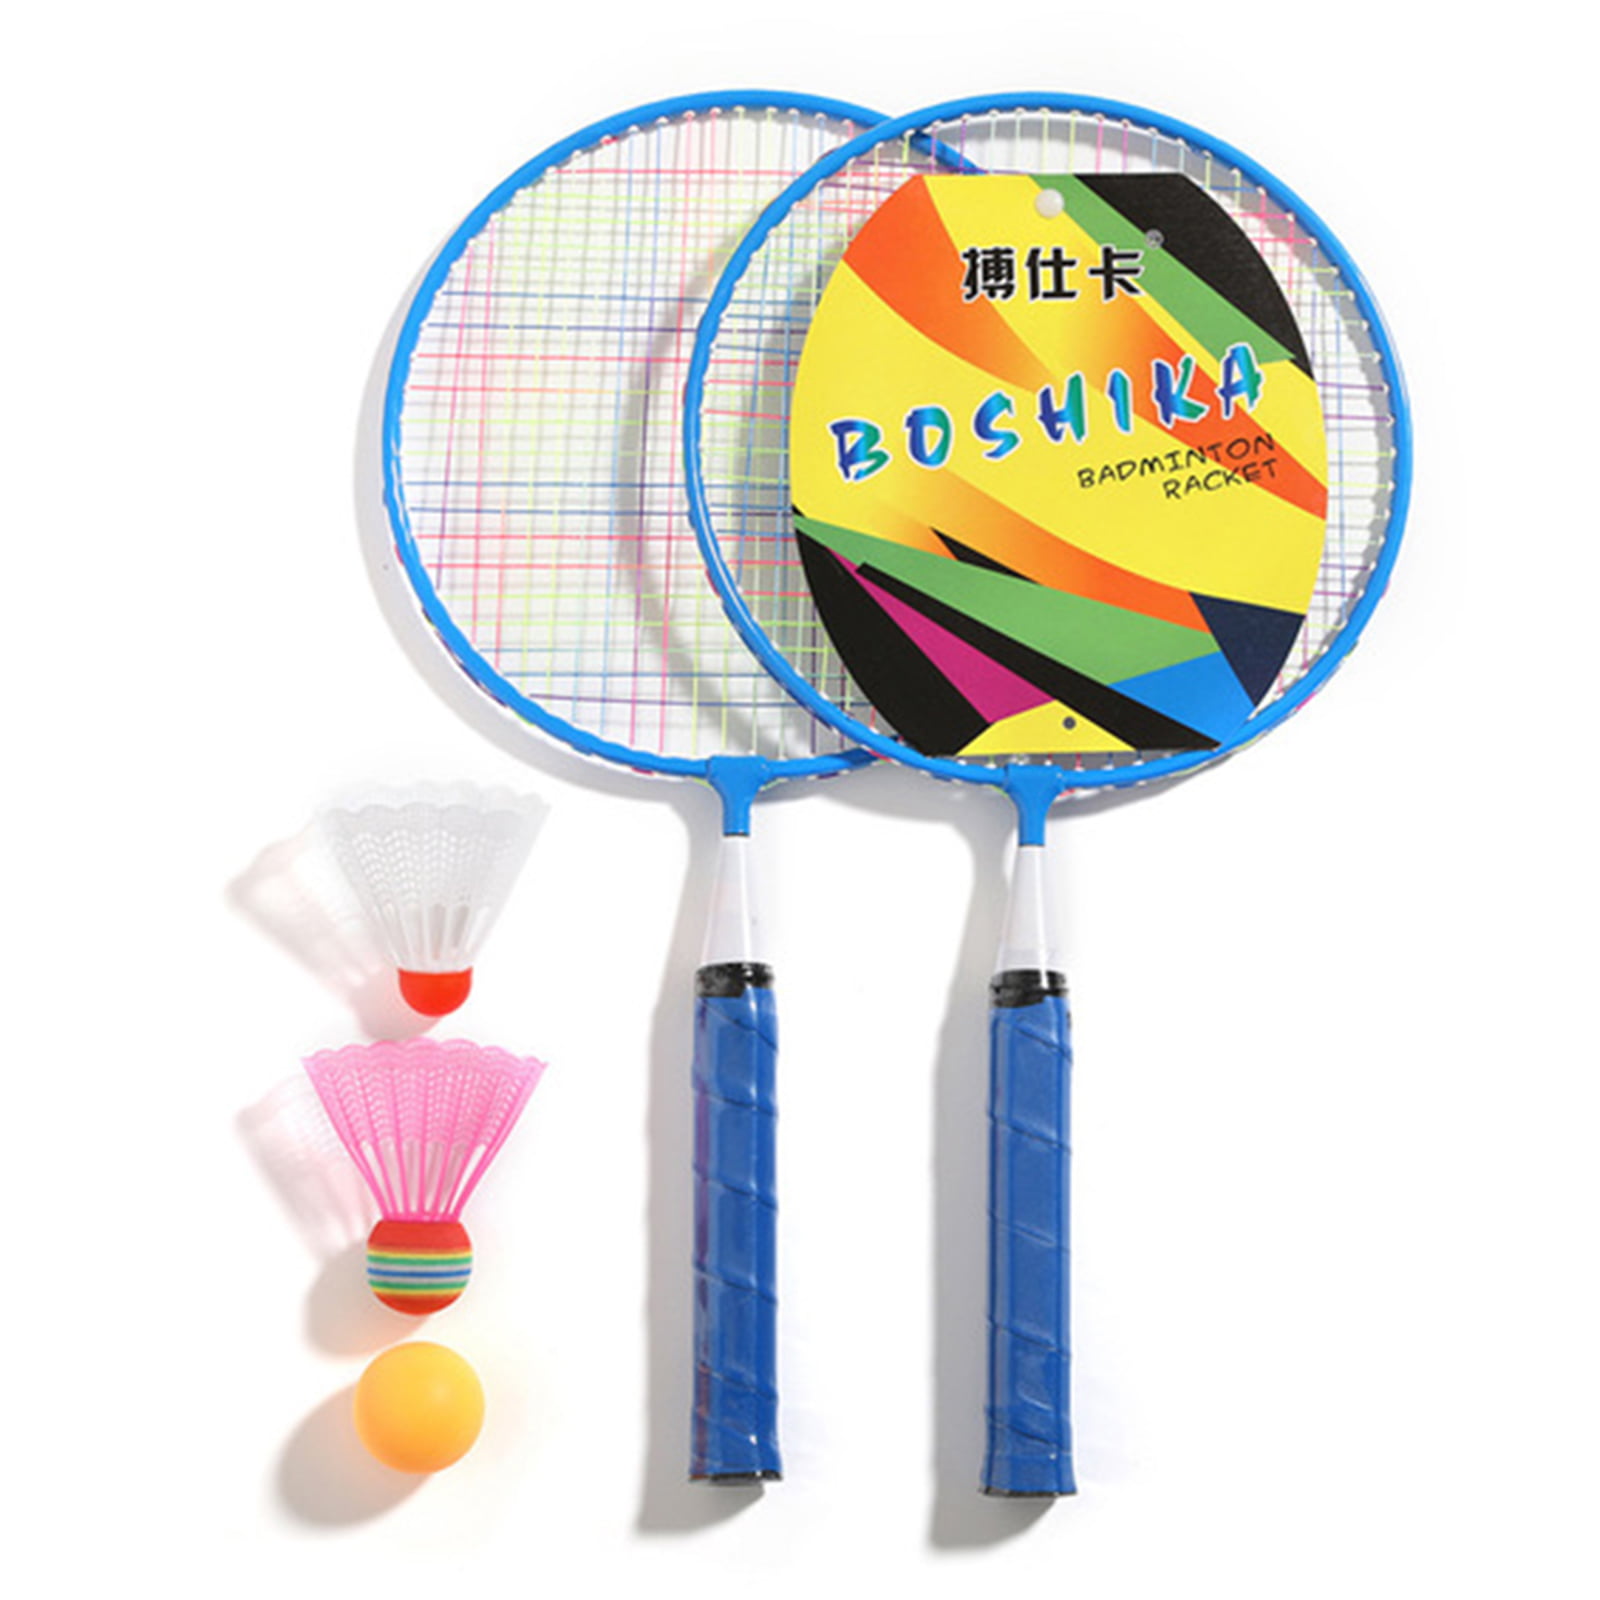 Badminton Combination Set 4 Rackets 4 Badmintons For Outdoor Fun Kids Game 